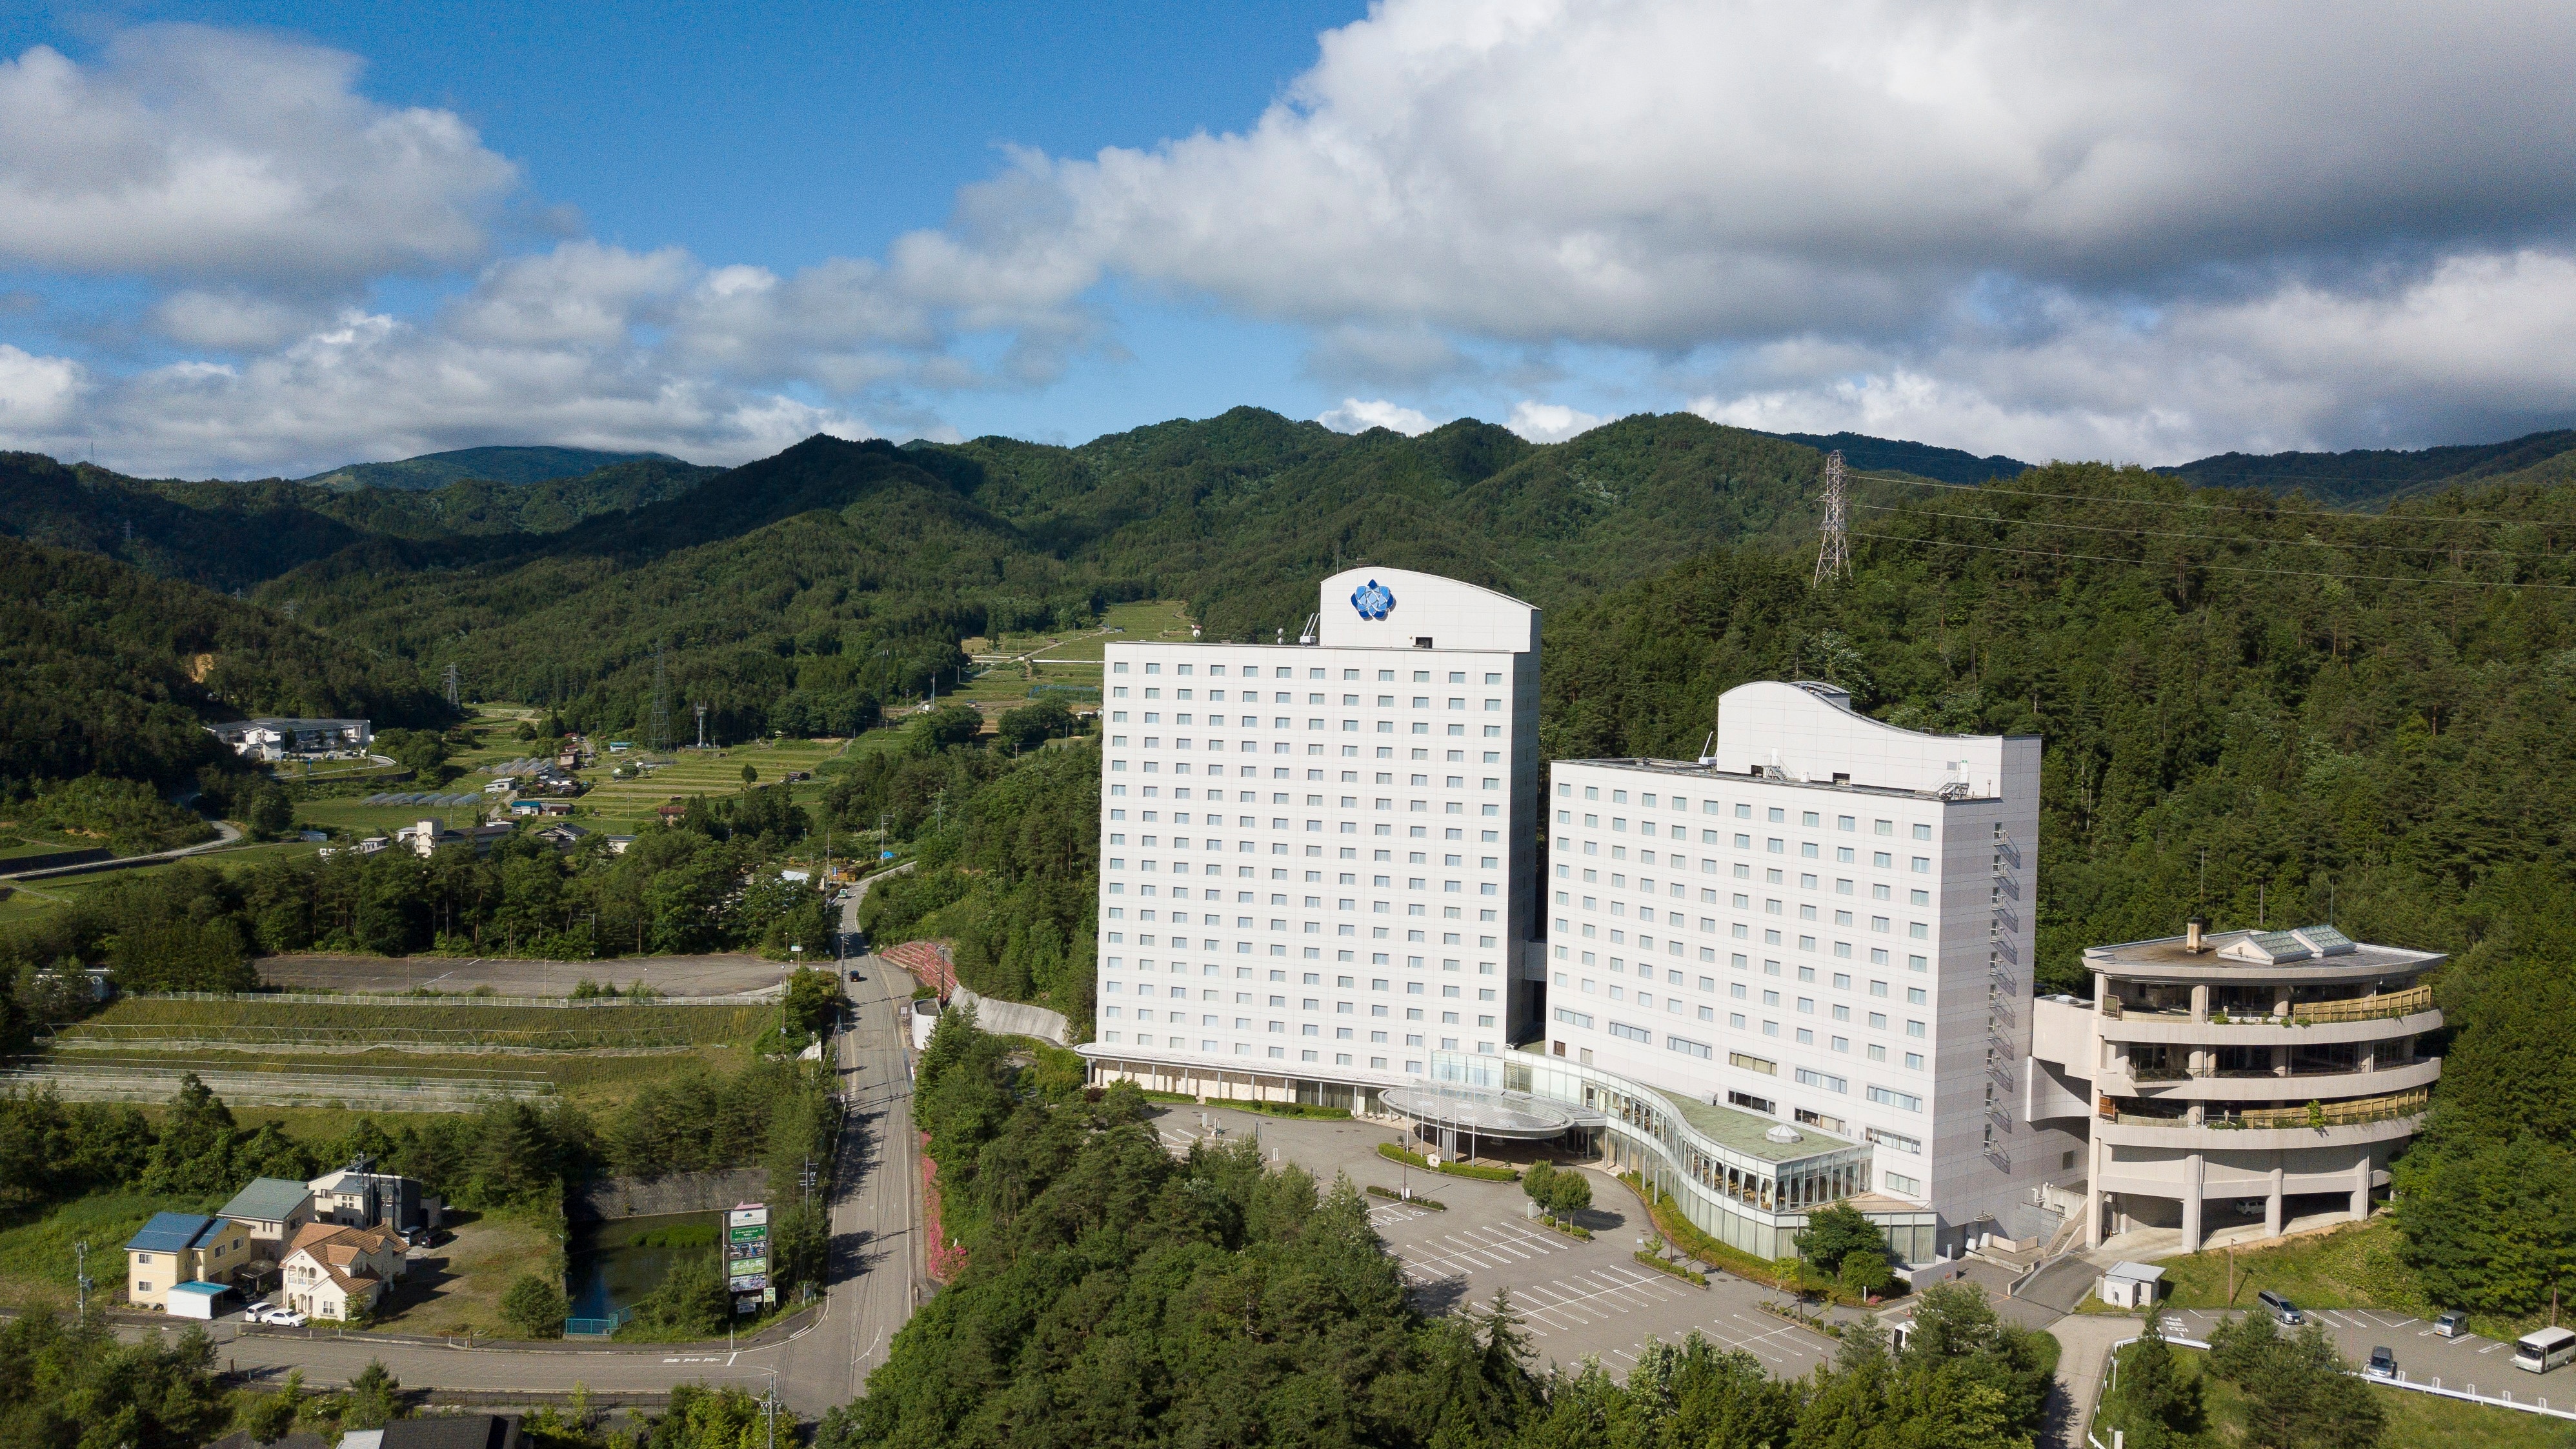 Hotel resor yang dikelilingi oleh alam yang melimpah, dibangun di atas bukit yang menghadap ke Pegunungan Alpen Utara